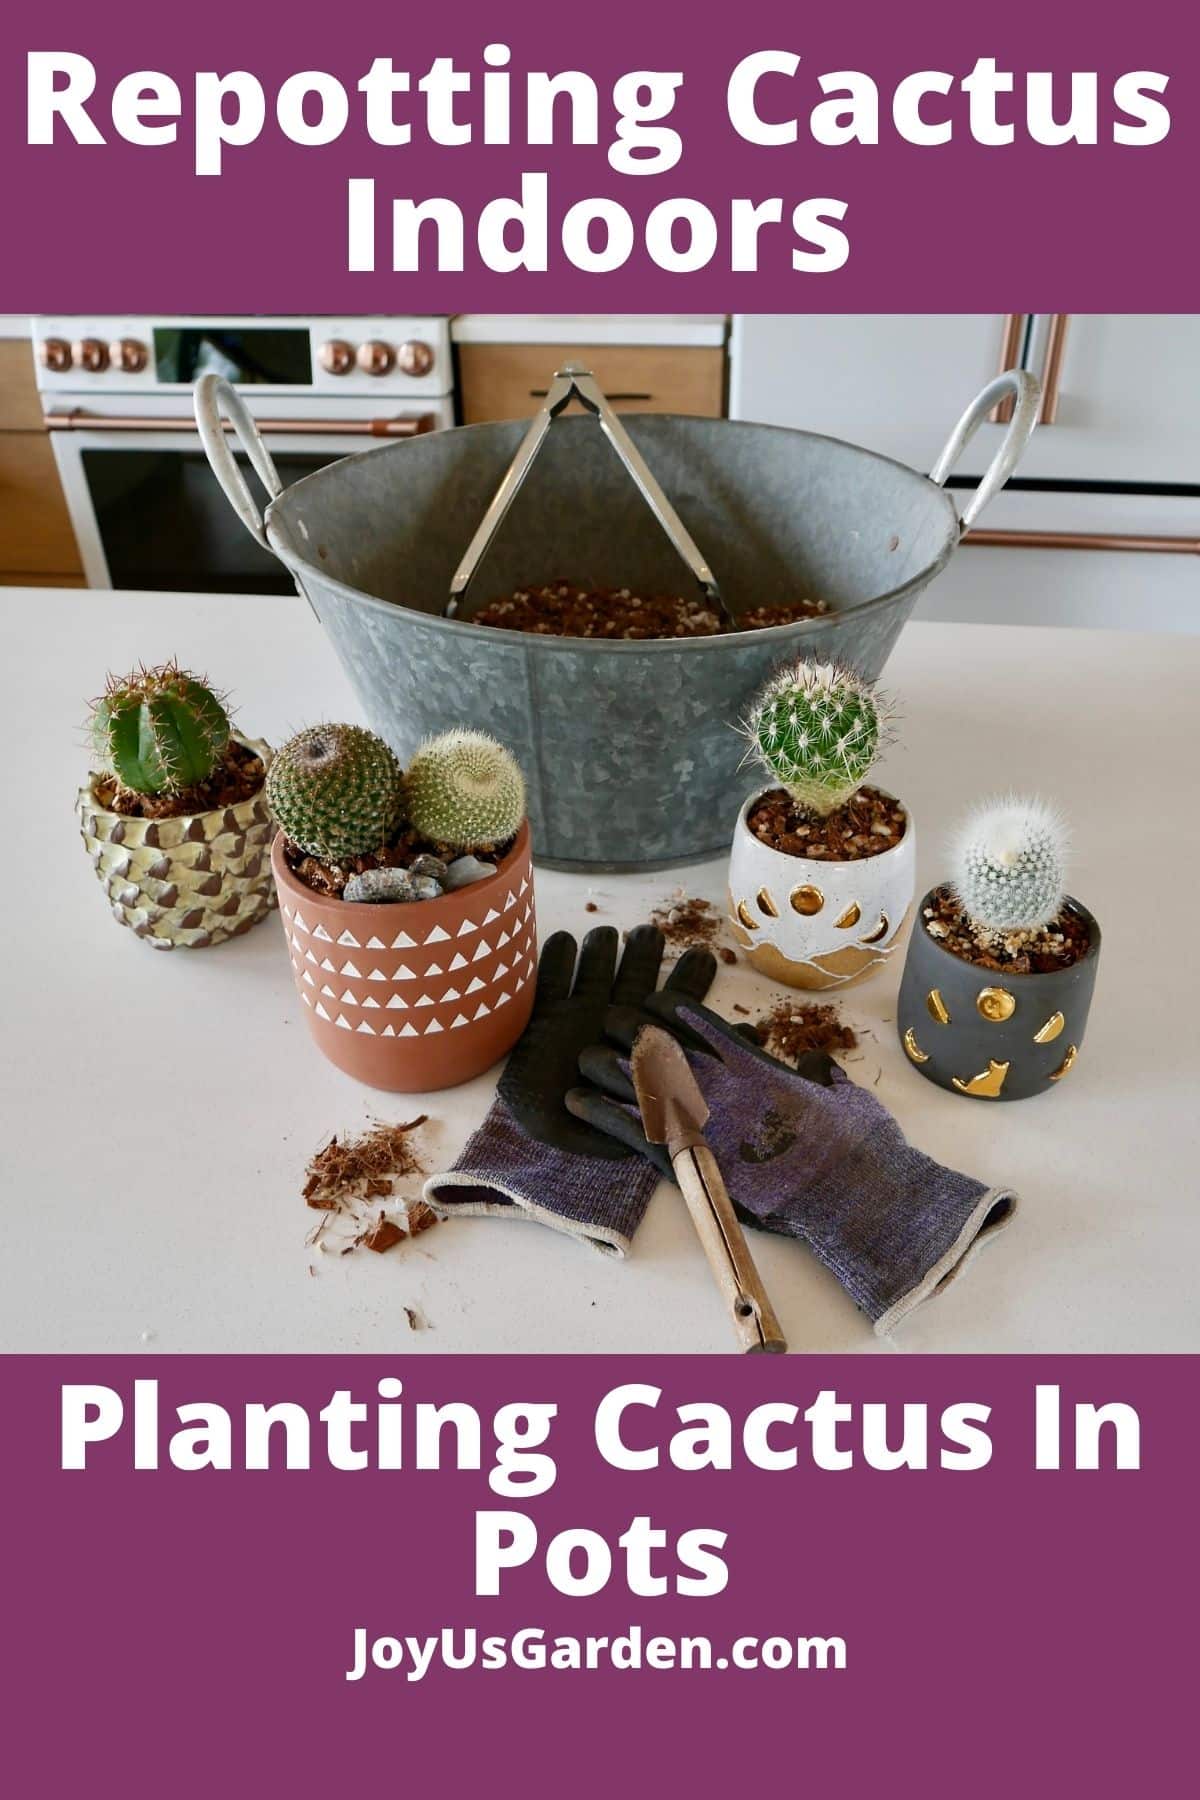  Trasplantar cactus en interiores: plantar cactus en macetas